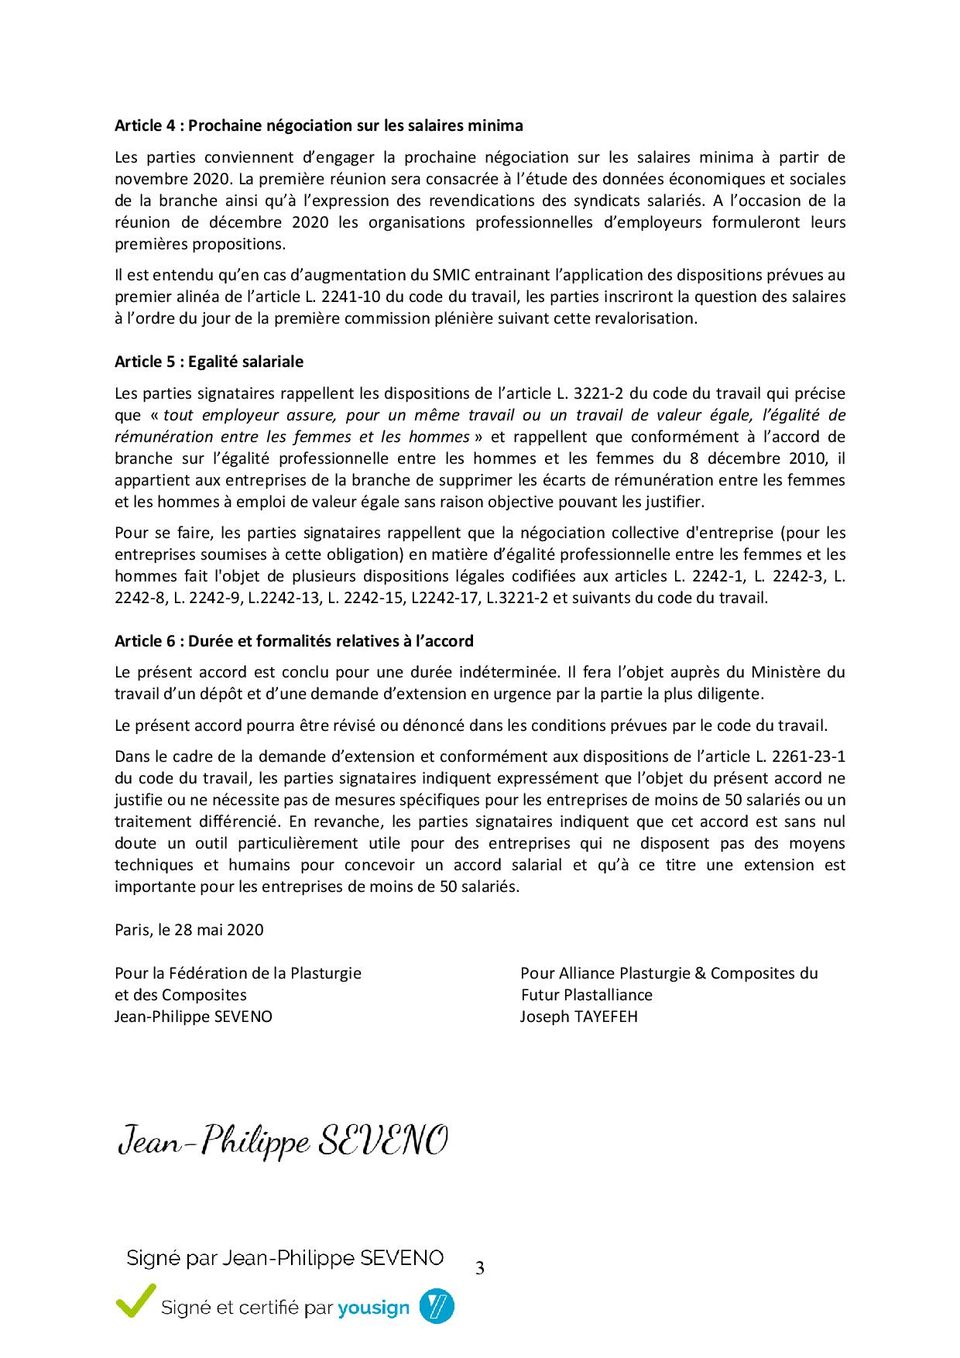 accord-salaires-minimas-plasturgie-signature-électronique-2020-page-3